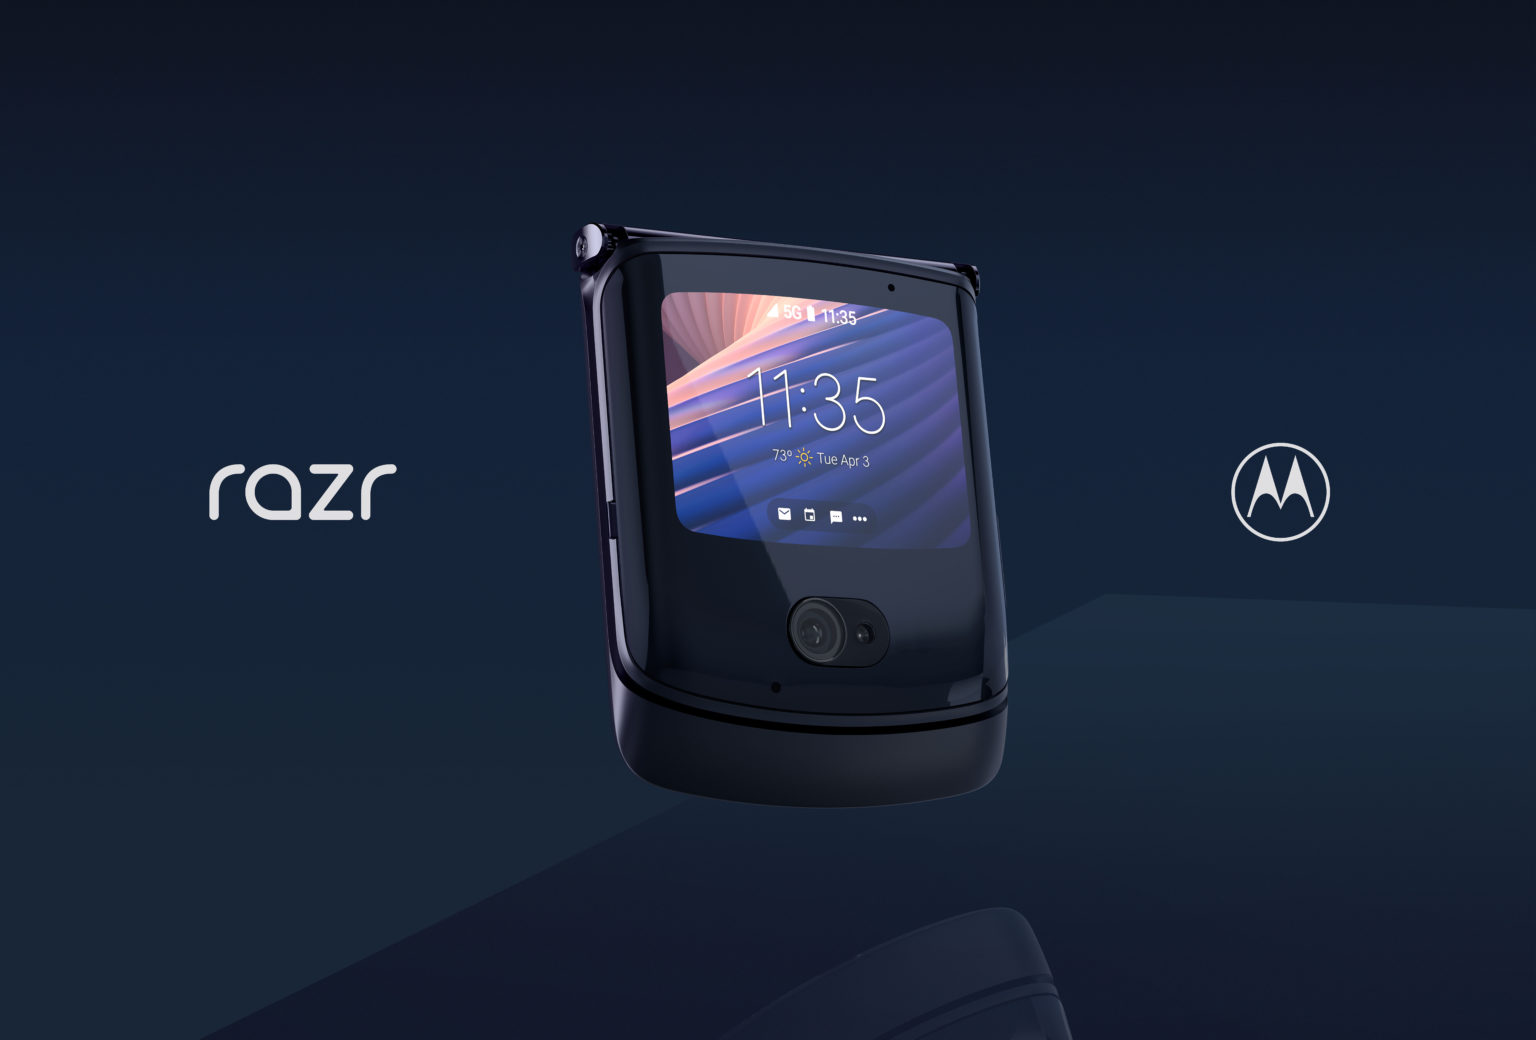 Amazon abre caixas do Motorola Razr 5G para dobrar tela do celular